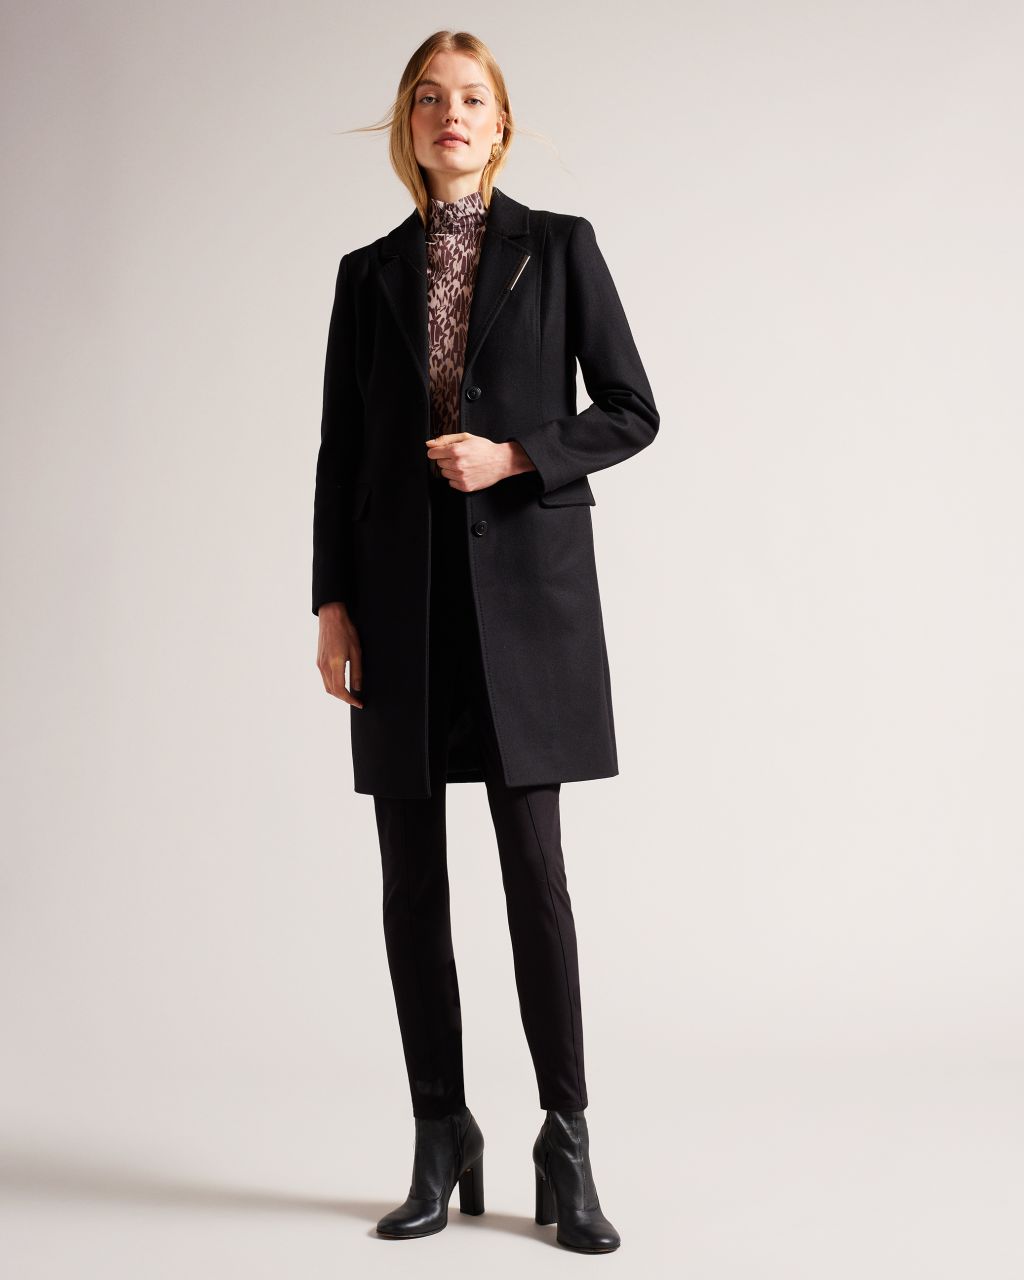 Women's Wool Blend City Coat in Black, Remmiey